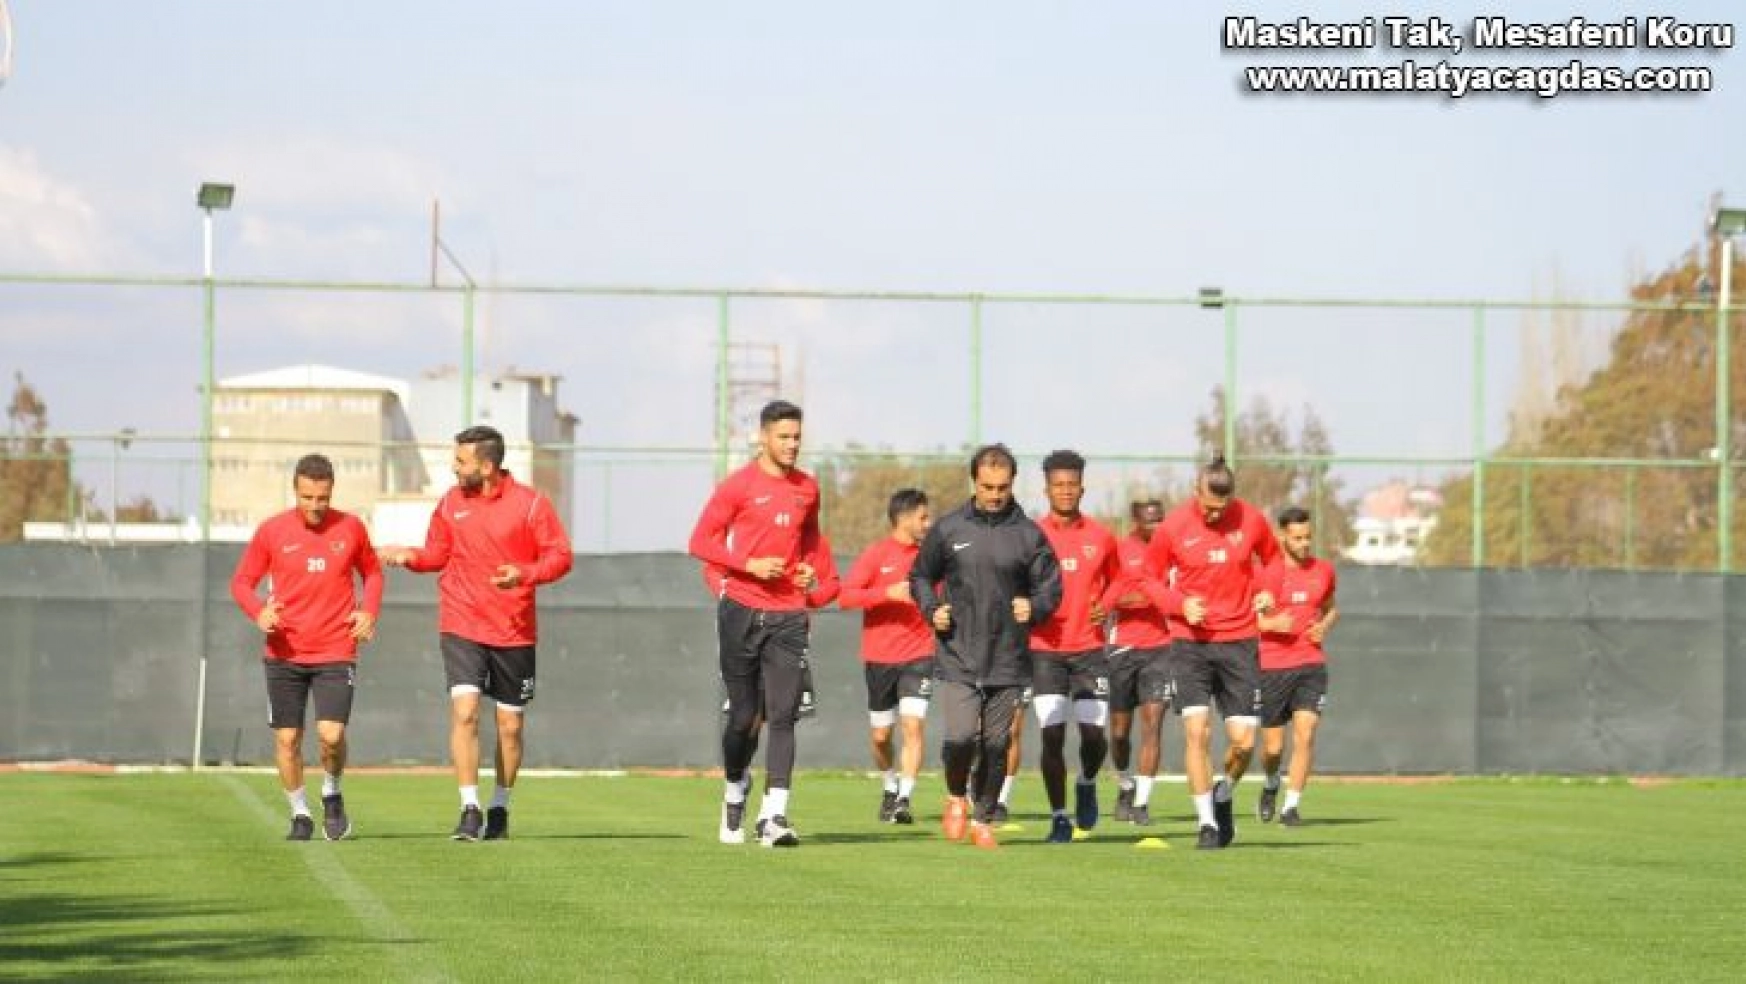 Hatayspor, Fatih Karagümrük maçına hazırlanıyor